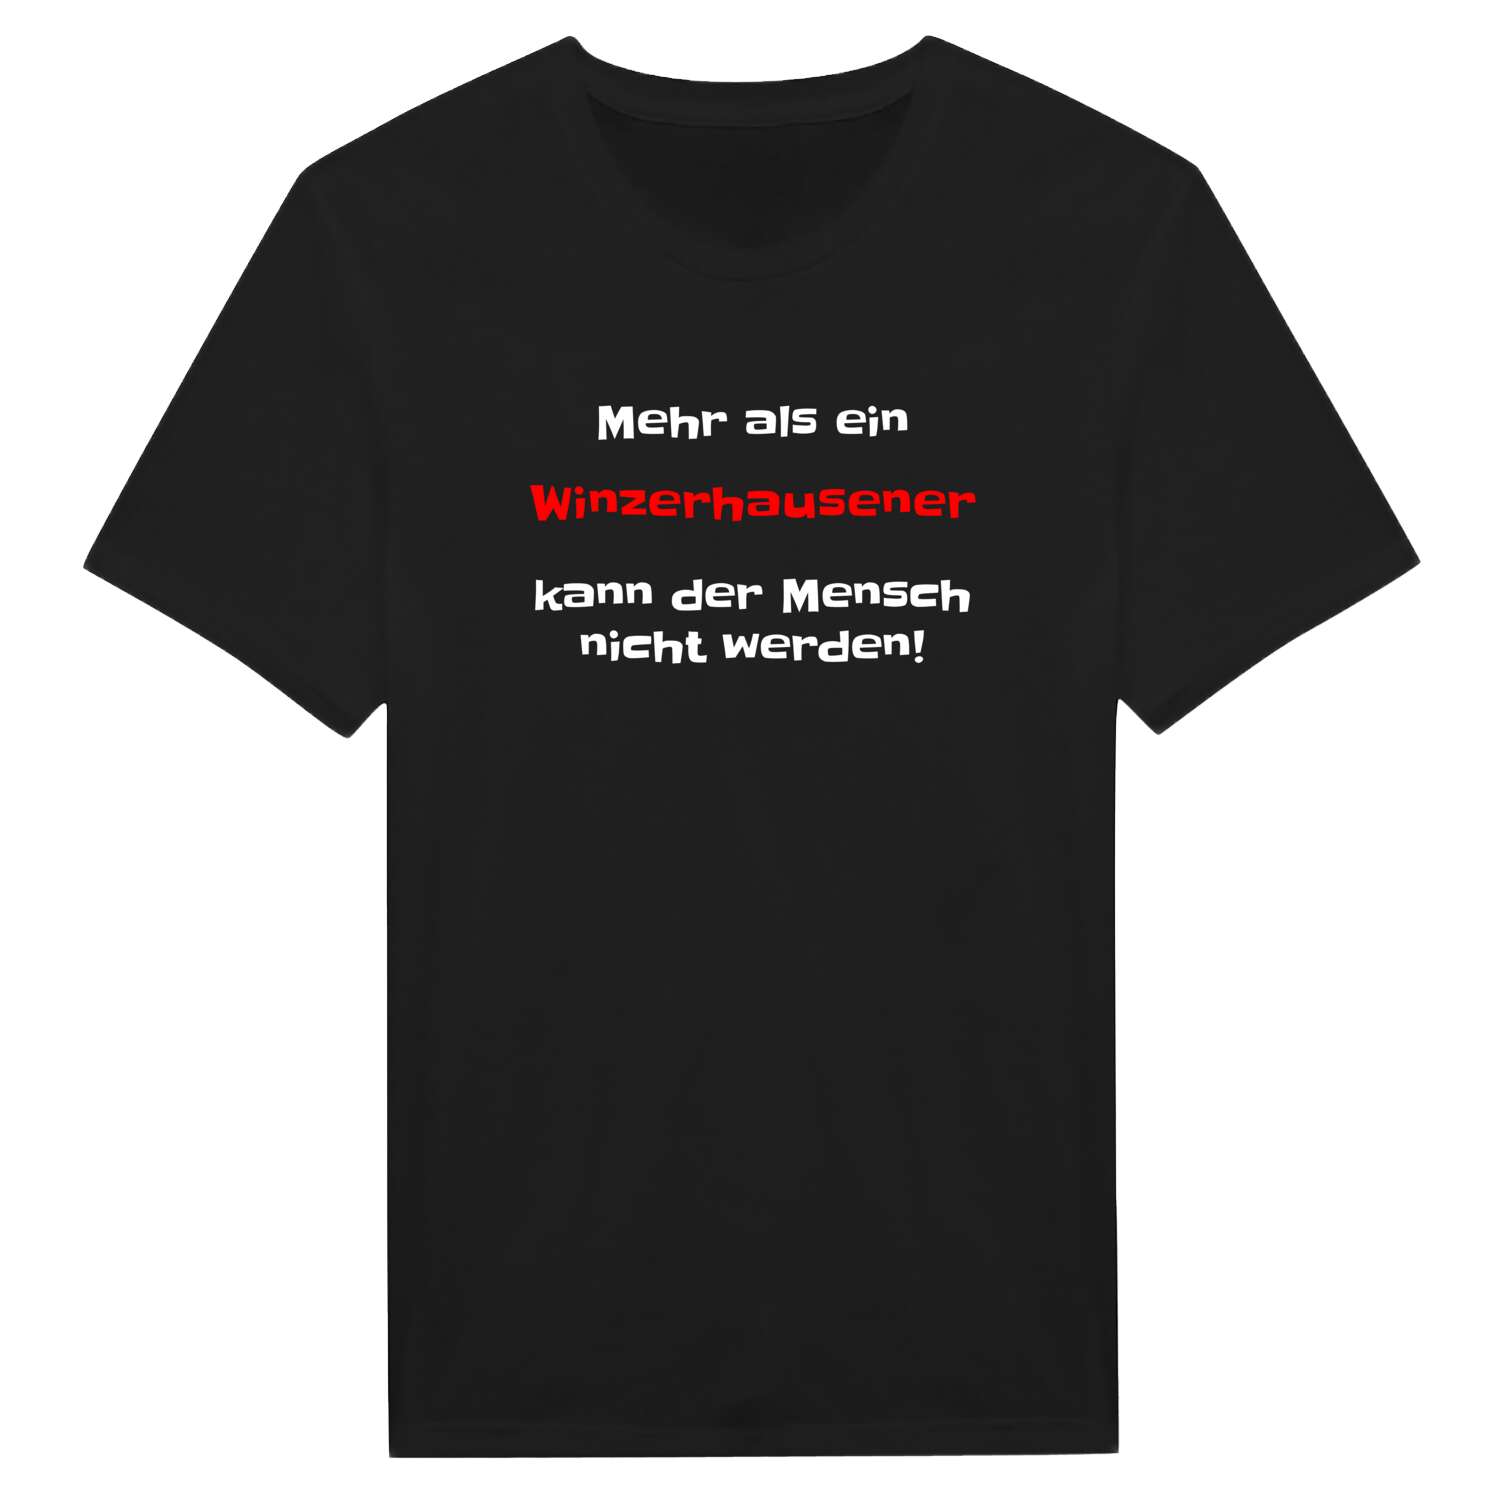 Winzerhausen T-Shirt »Mehr als ein«